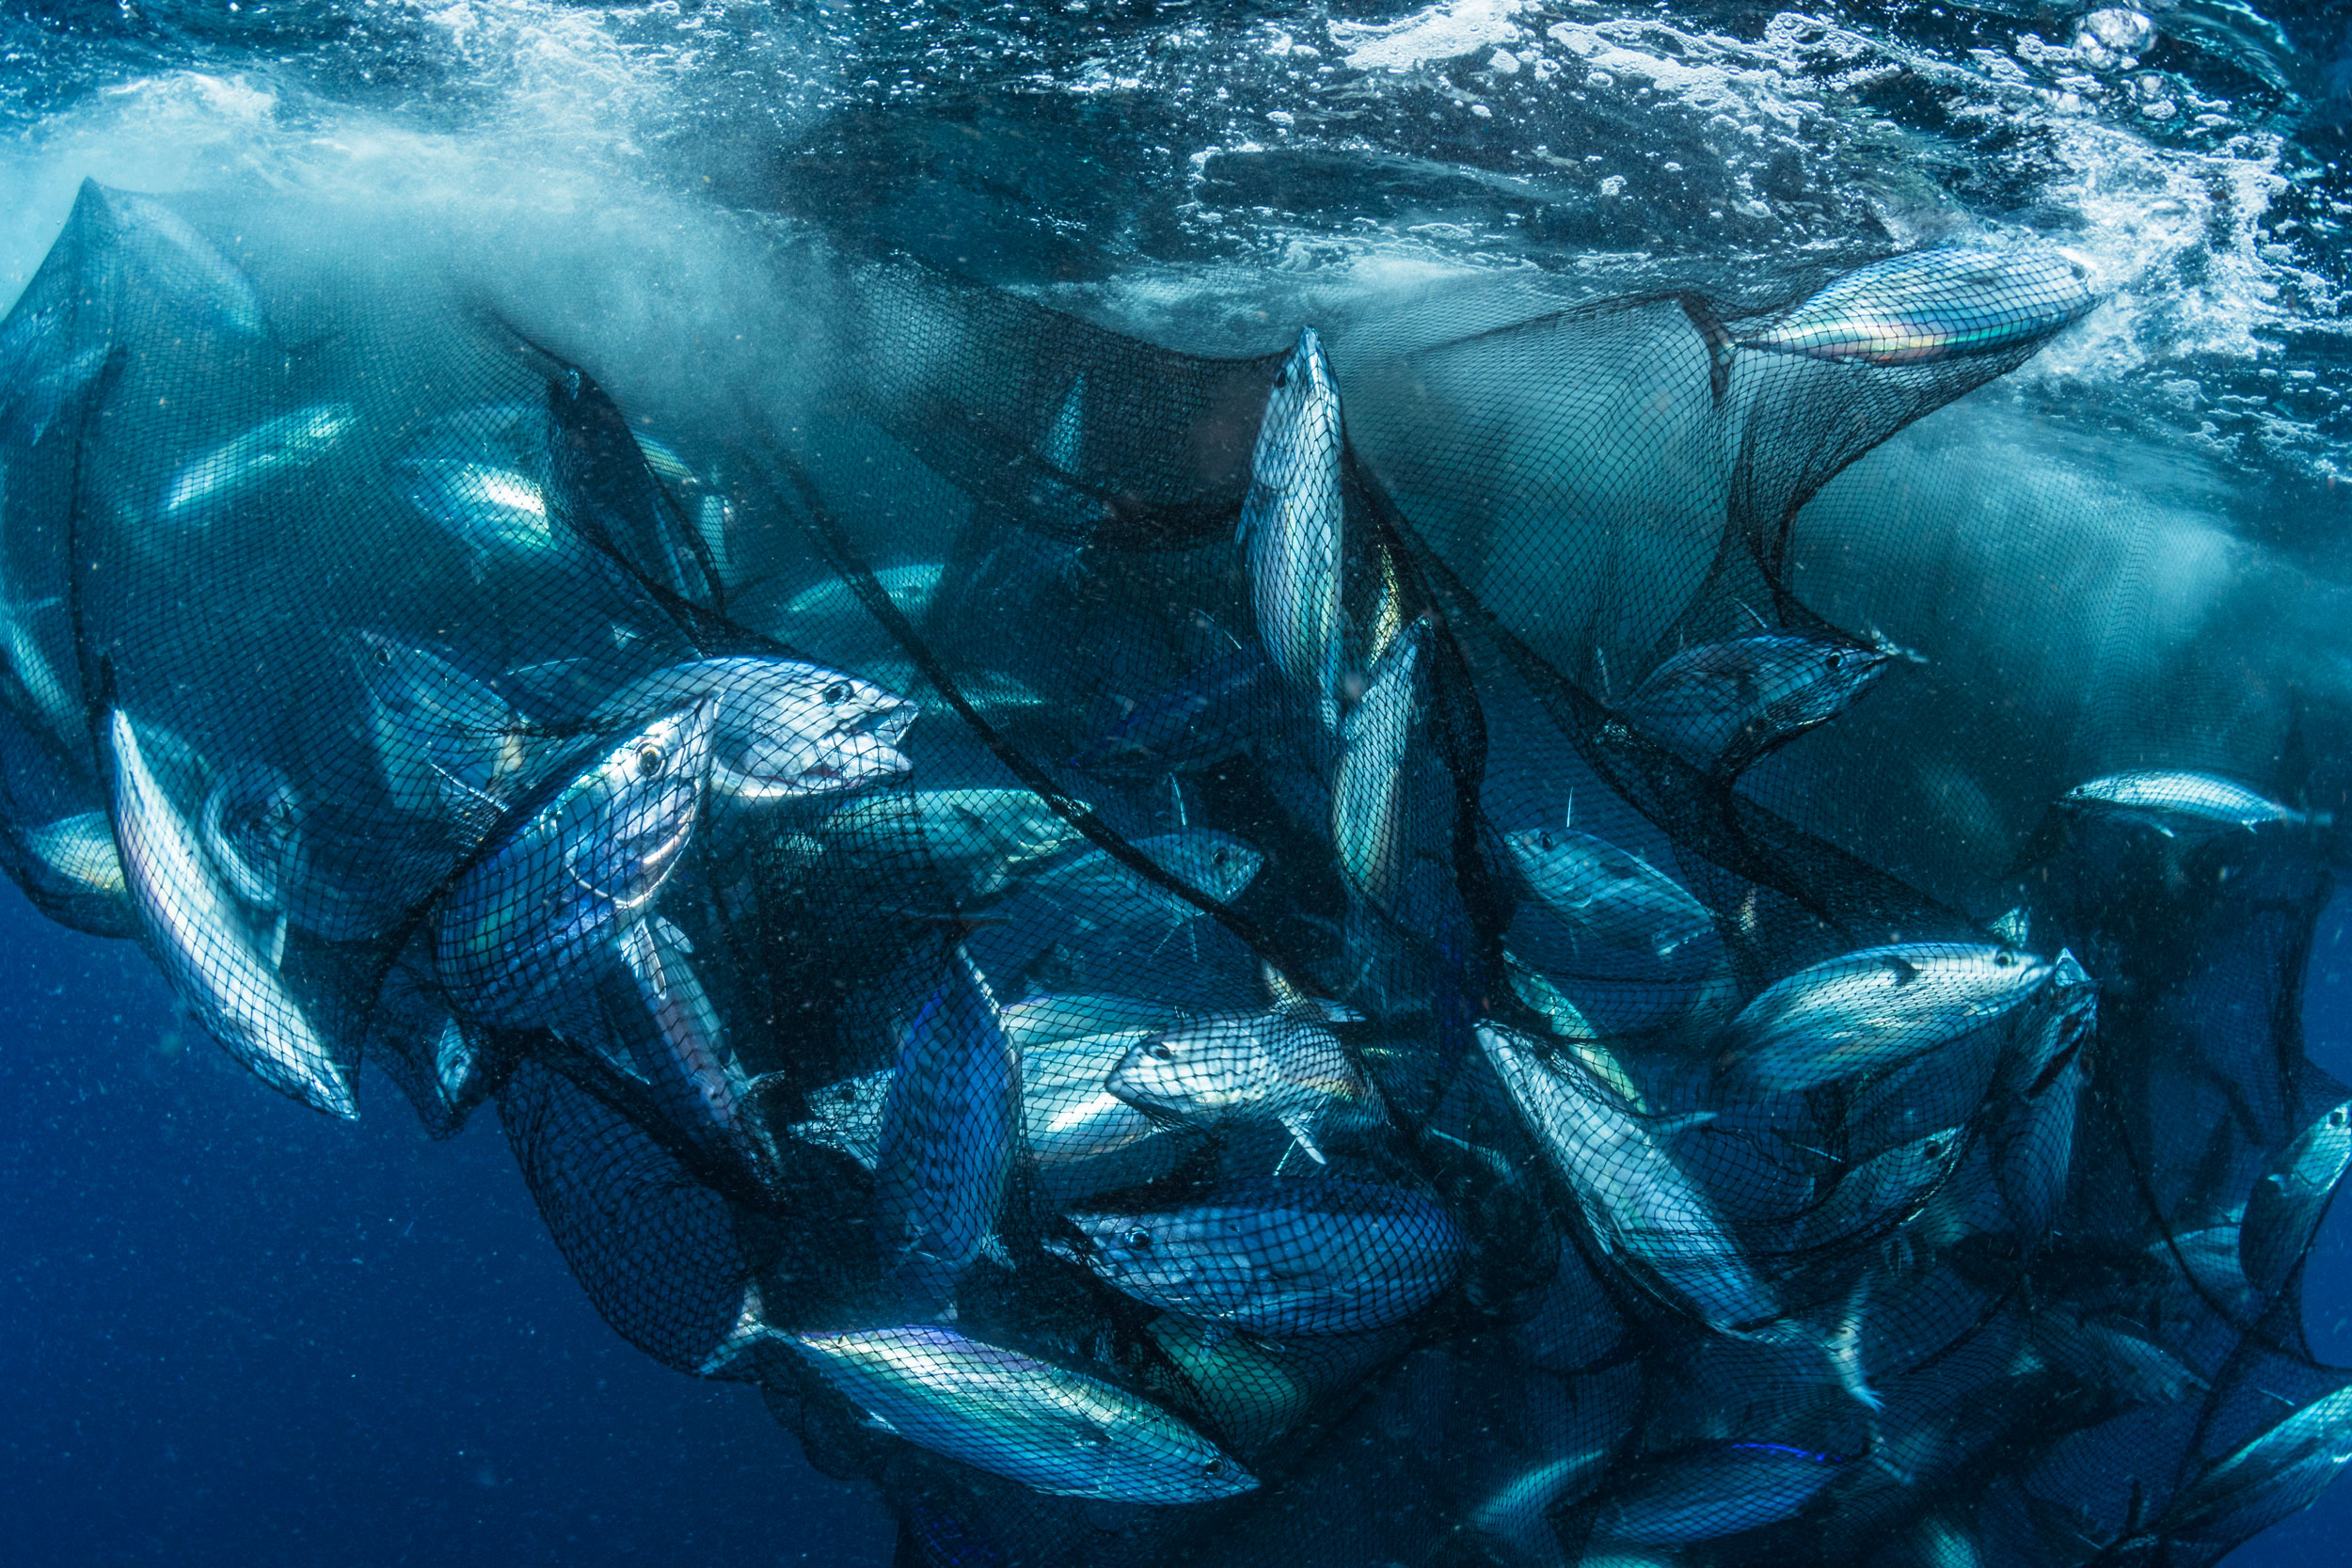 Tuna Fishing Boat Raising its Fishing Net